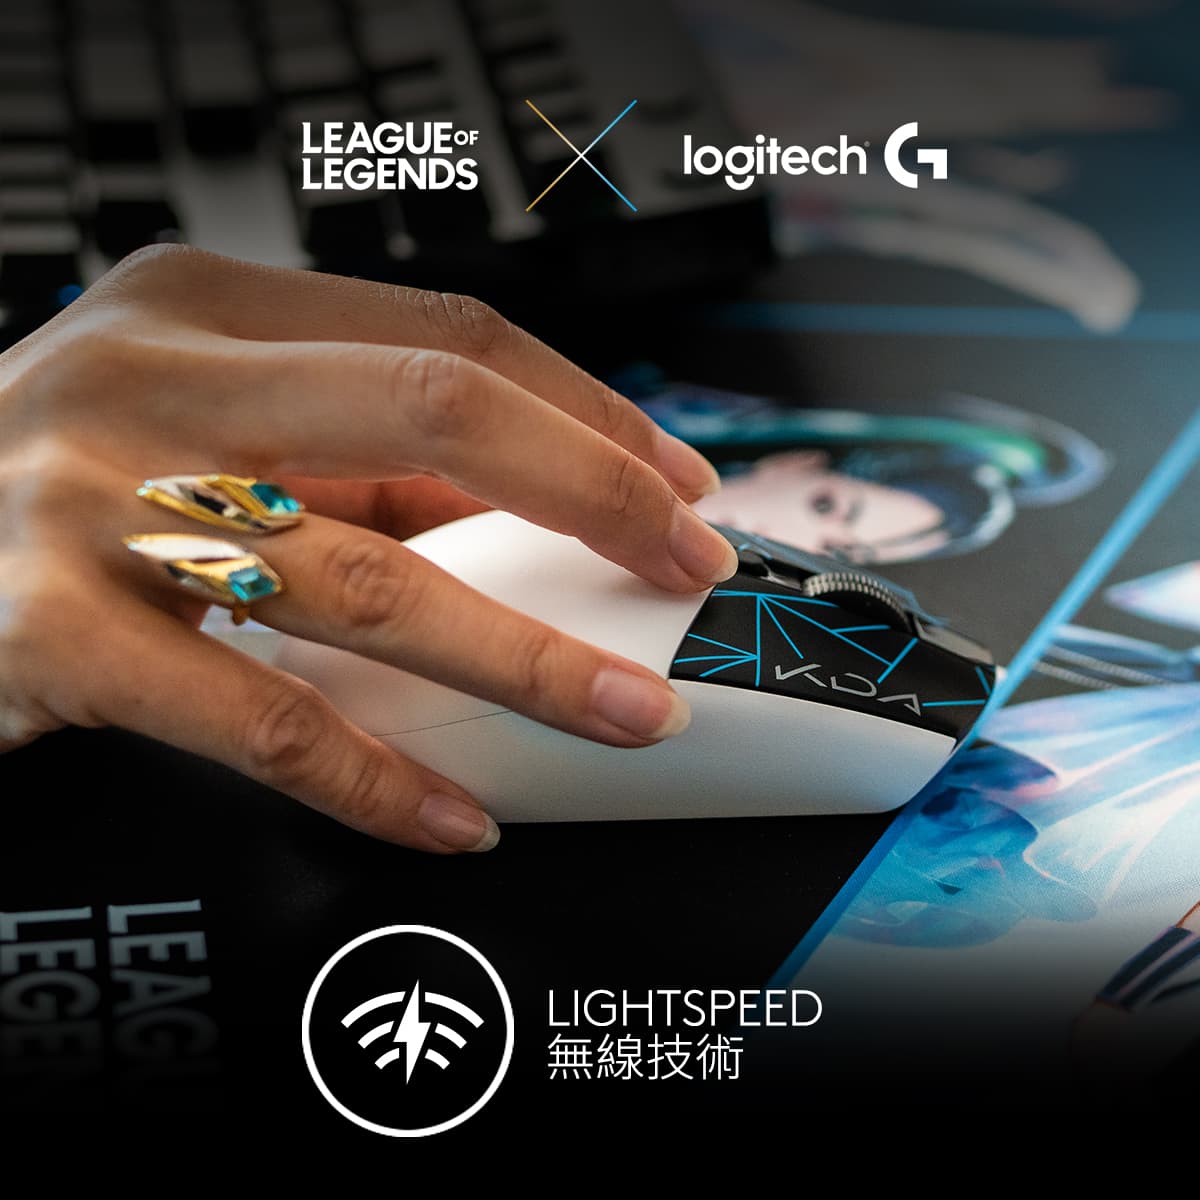 LIGHTSPEED  Logitech G 系列的先進端對端無線解決方案，為遊戲滑鼠和鍵盤提供低延遲和可靠的效能。